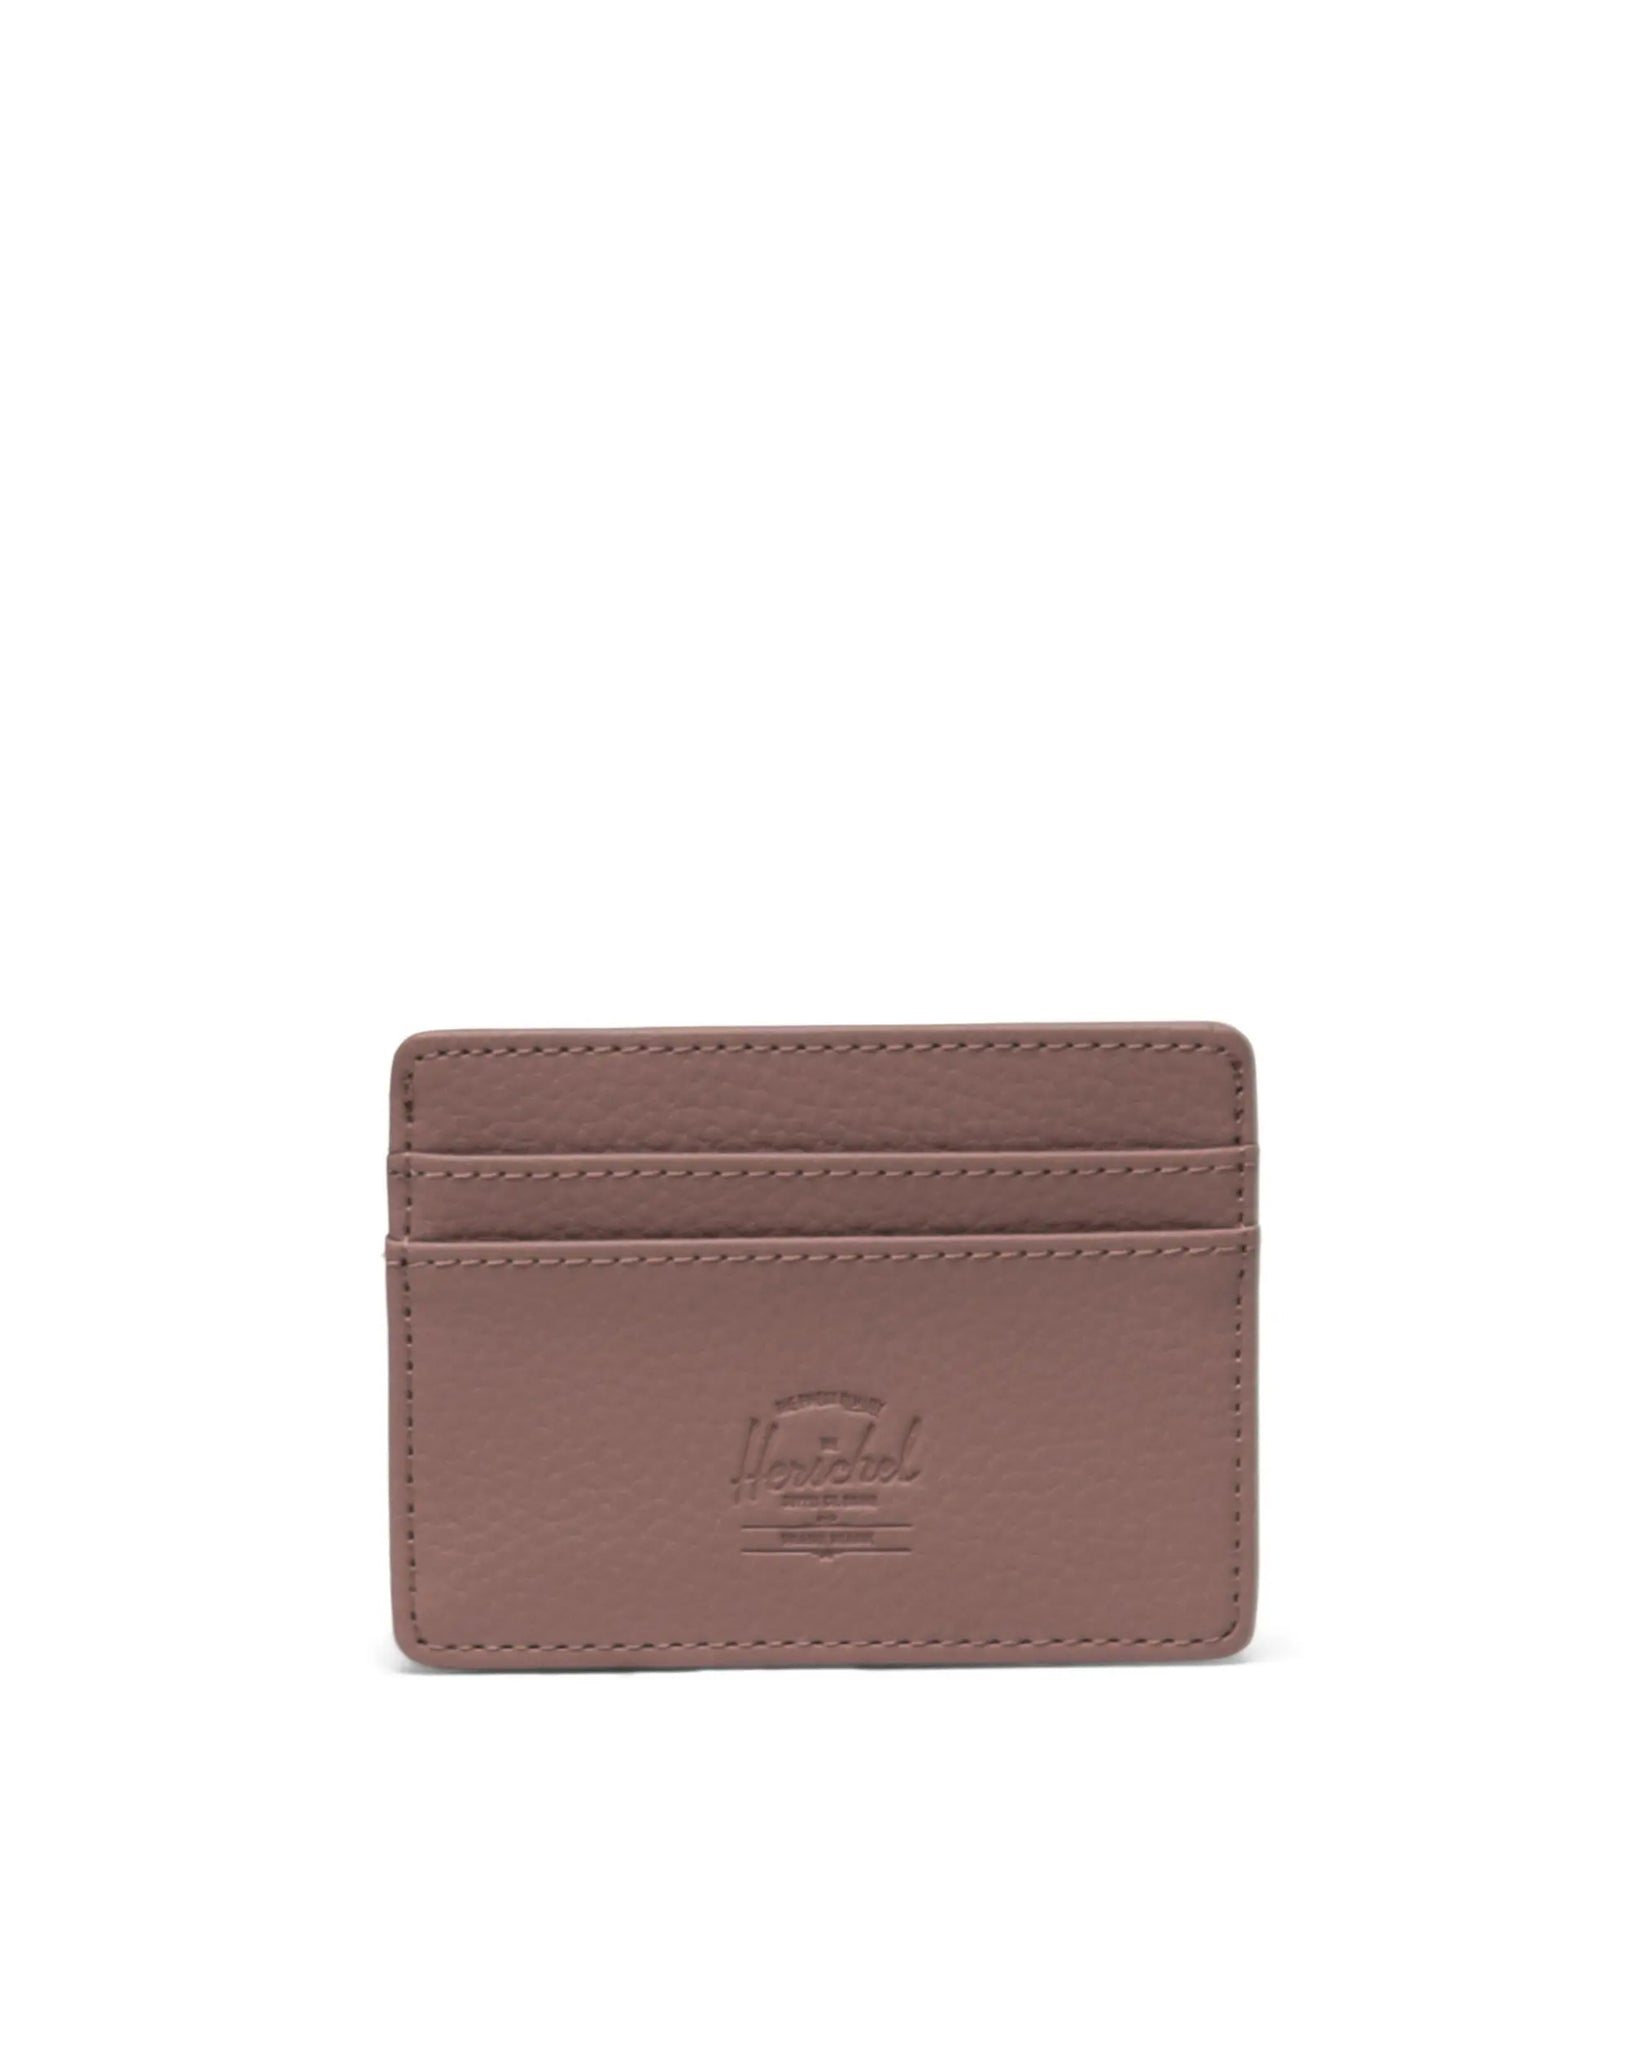 Herschel - Charlie Cardholder Leather Vegan Wallet